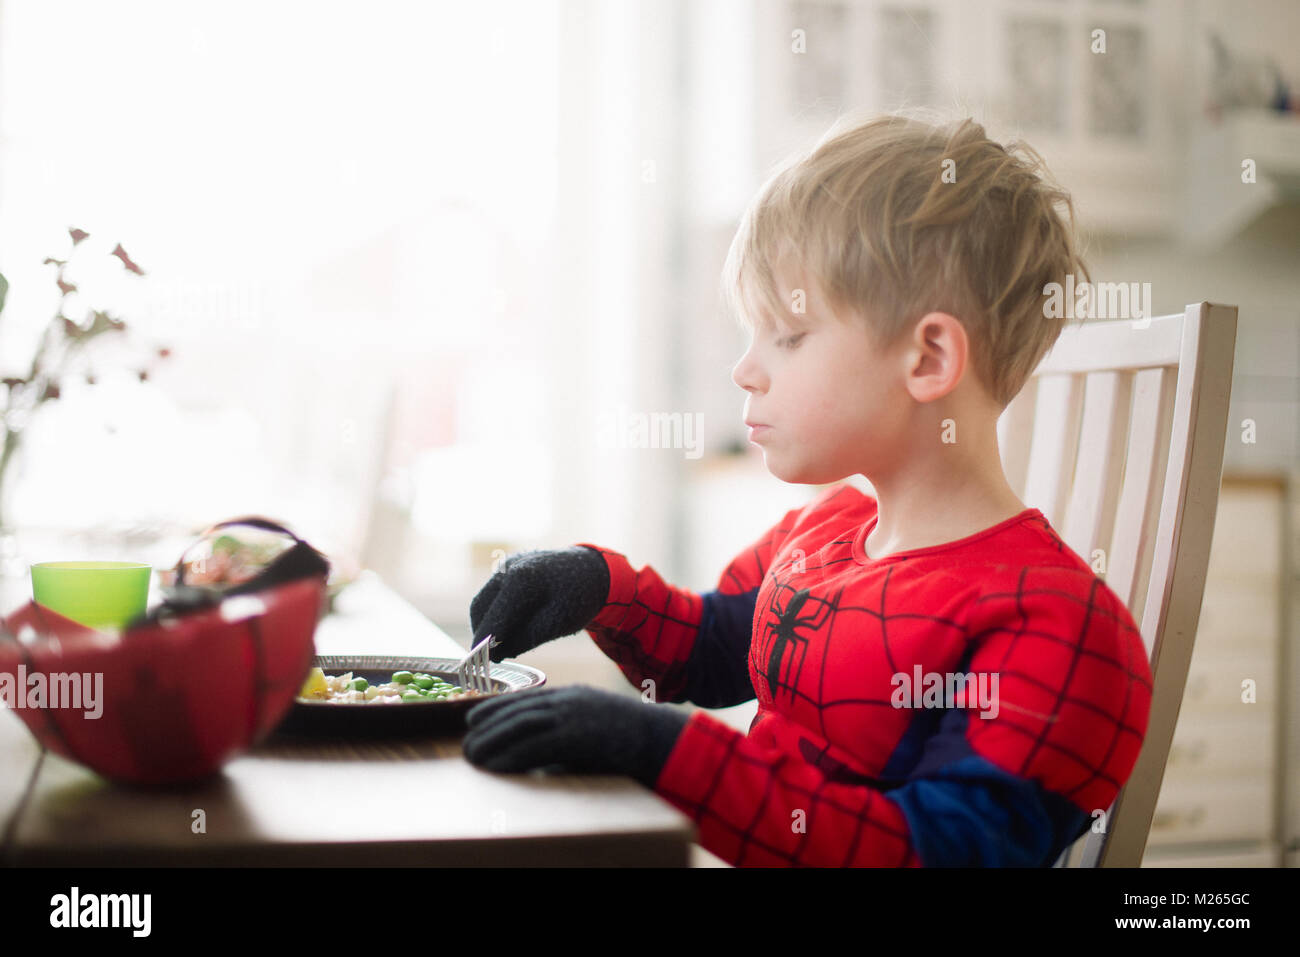 Chico escandinavo comiendo su almuerzo en un traje de hombre araña. Foto de stock